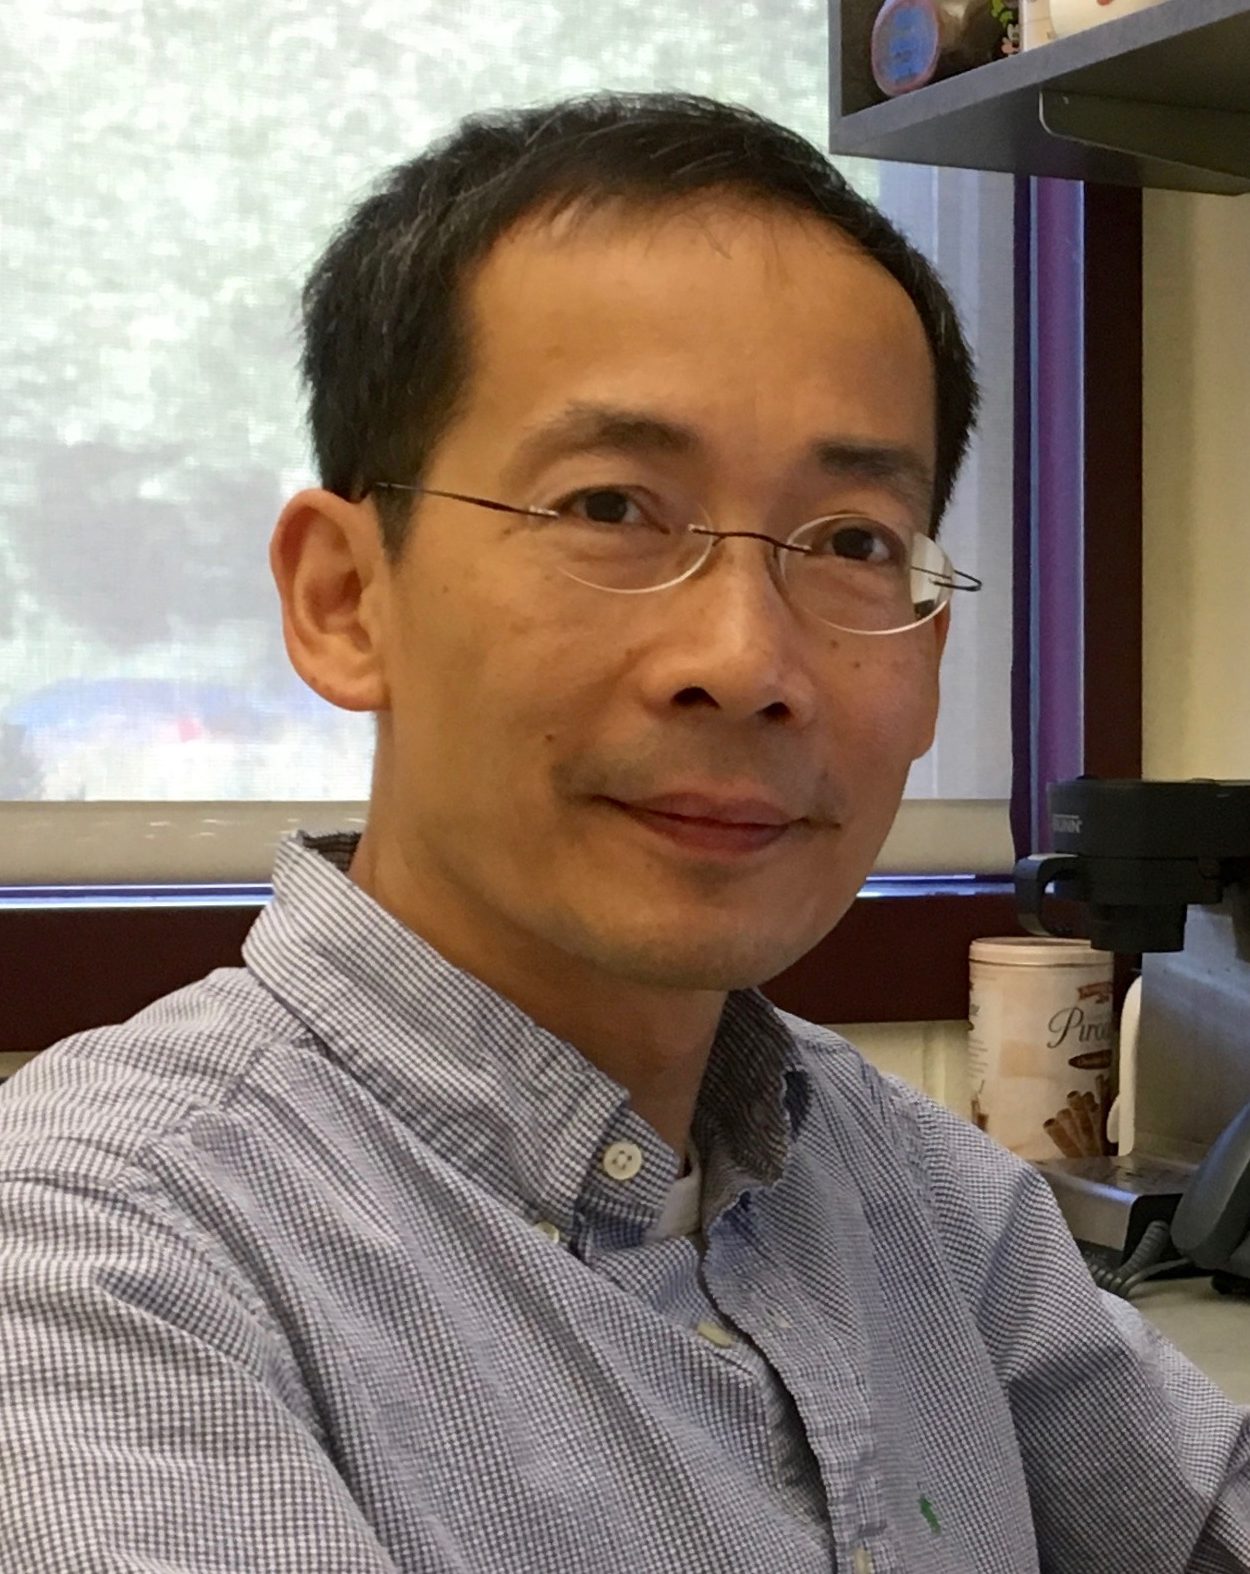 Yuanhao James Li, Ph.D.